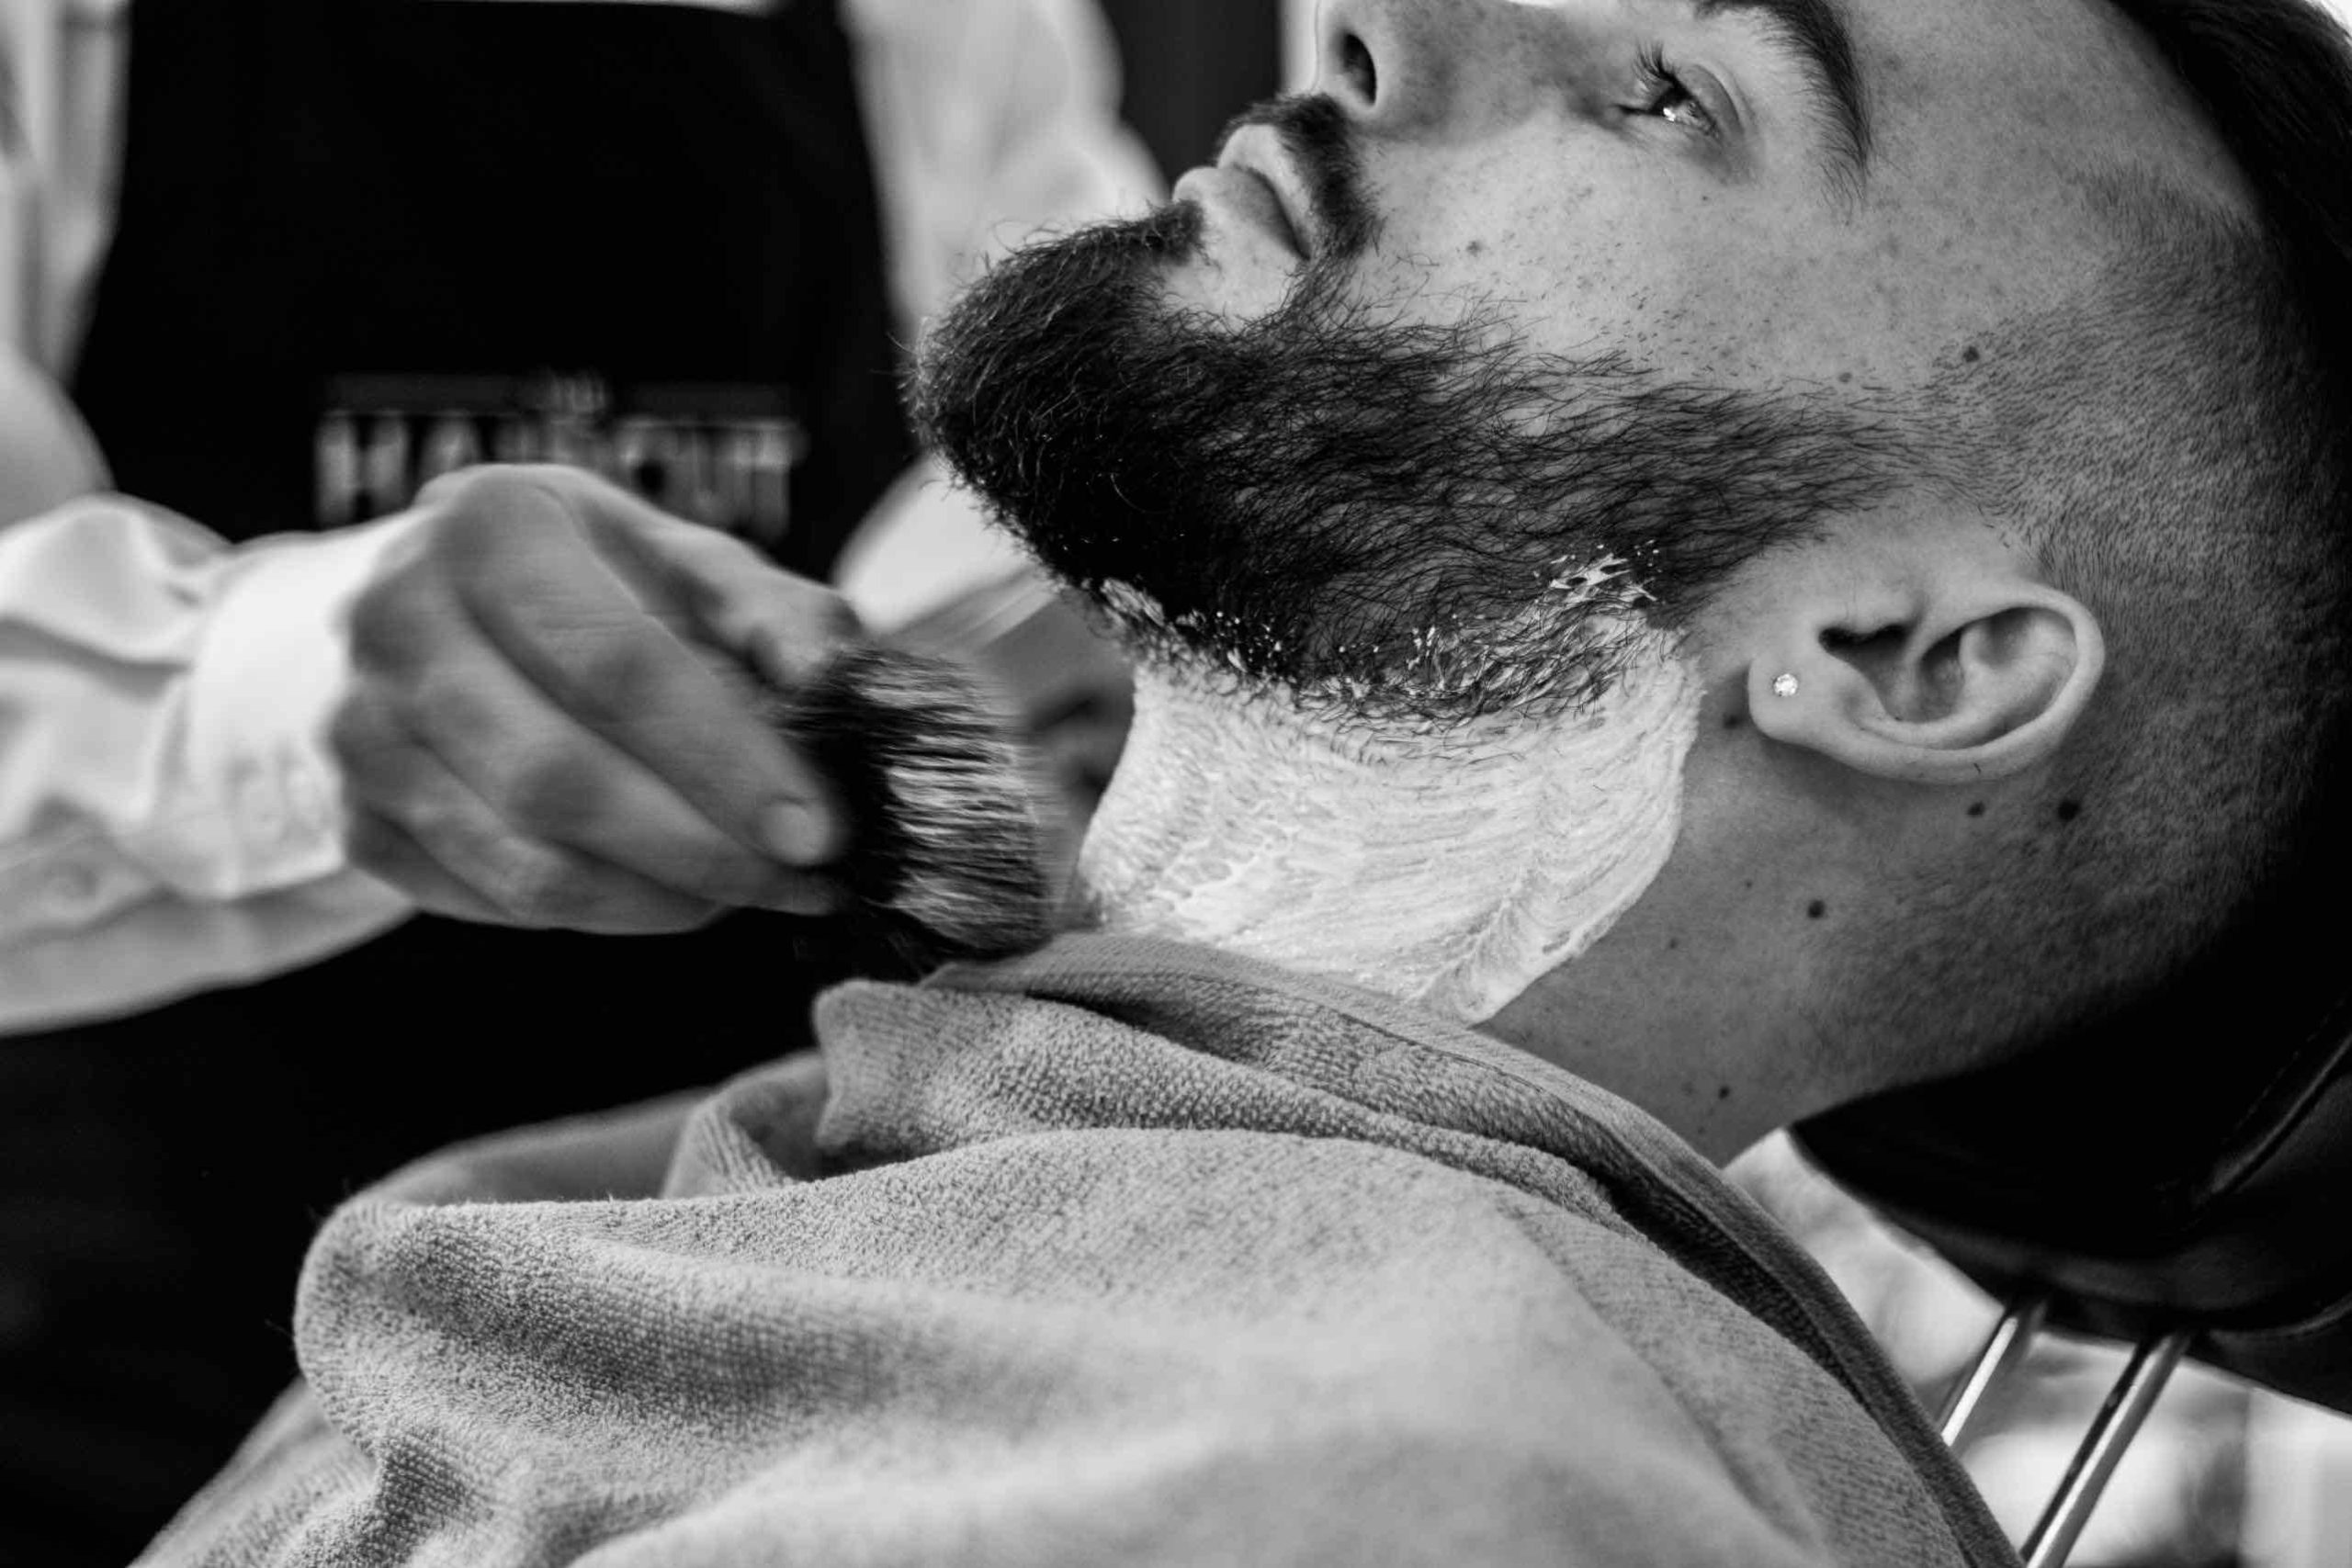 Friseur trägt Rasierschaum auf das Gesicht eines Kunden auf